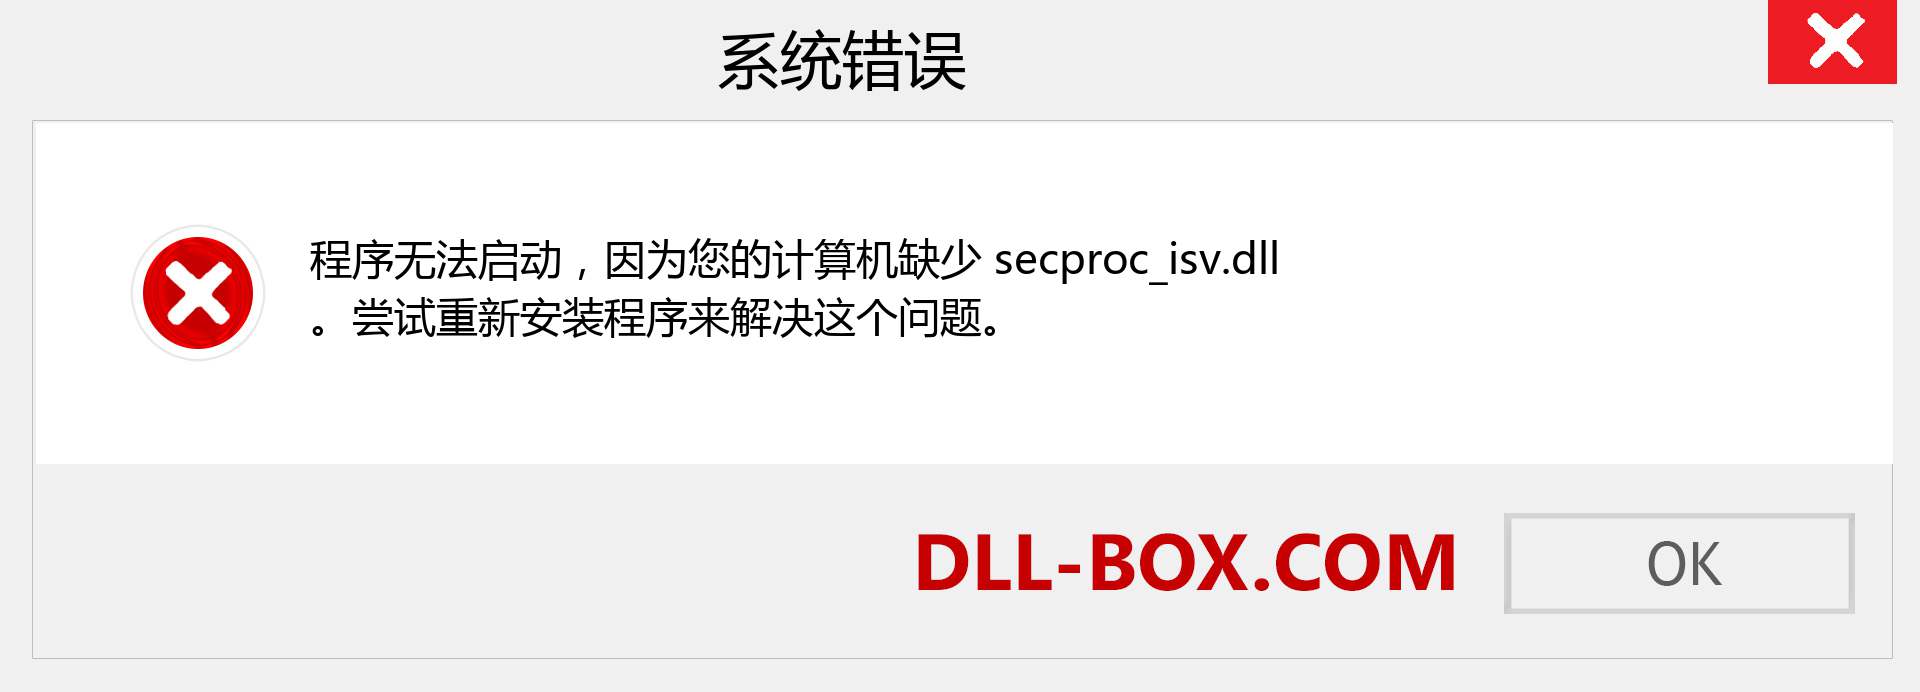 secproc_isv.dll 文件丢失？。 适用于 Windows 7、8、10 的下载 - 修复 Windows、照片、图像上的 secproc_isv dll 丢失错误